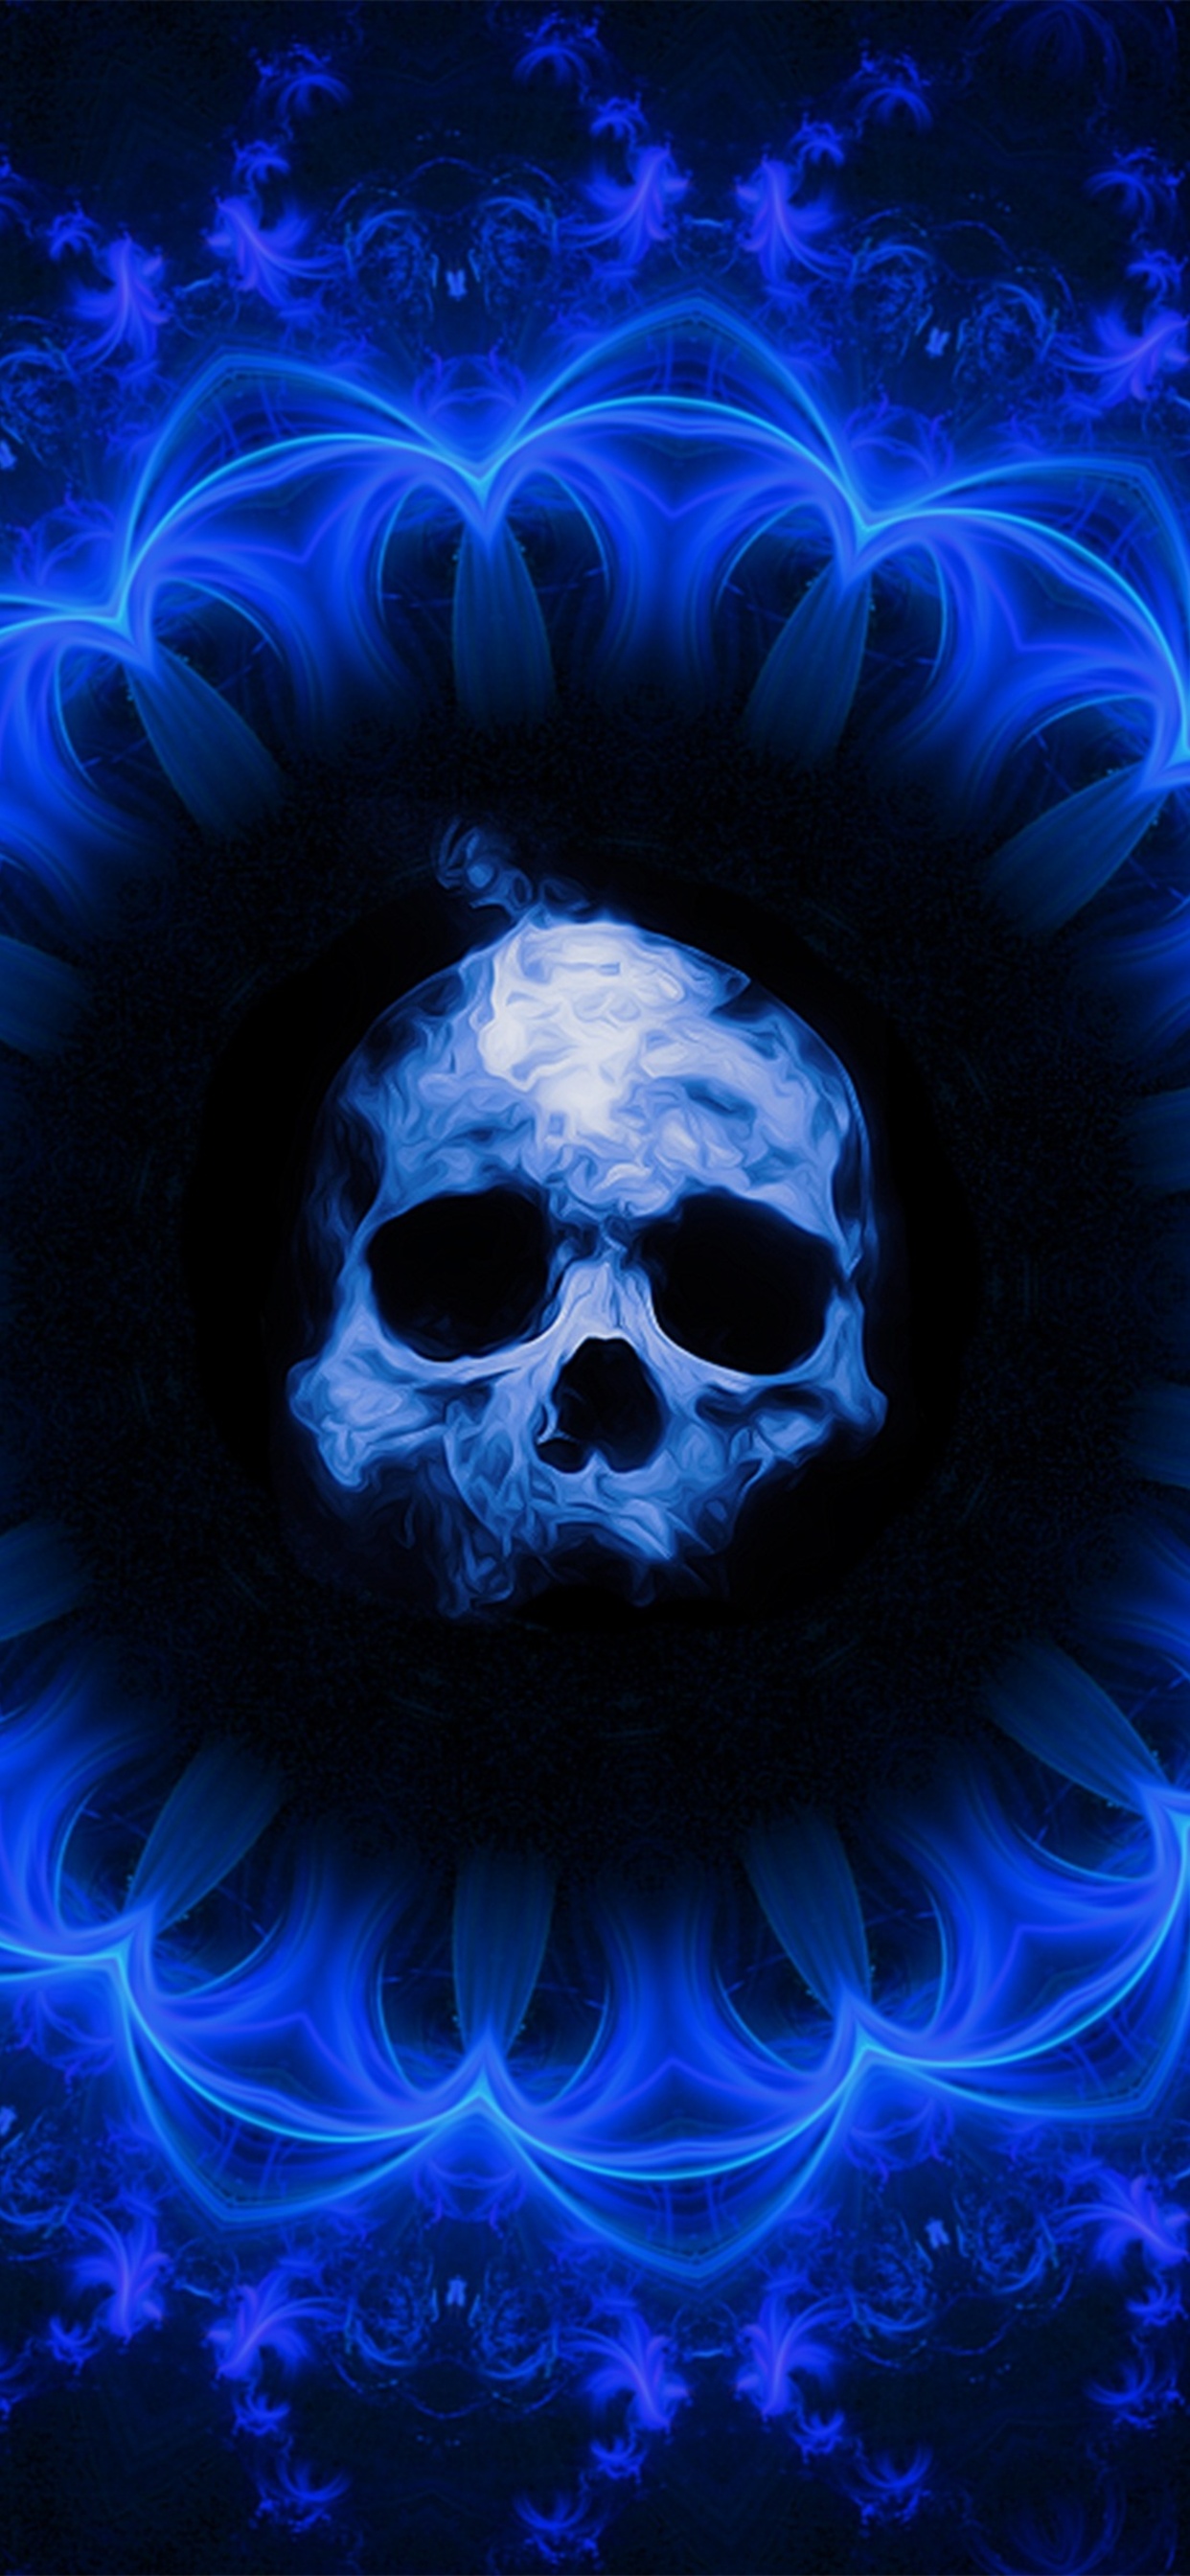 skull-dark-blue-gothic-fantasy-uj.jpg